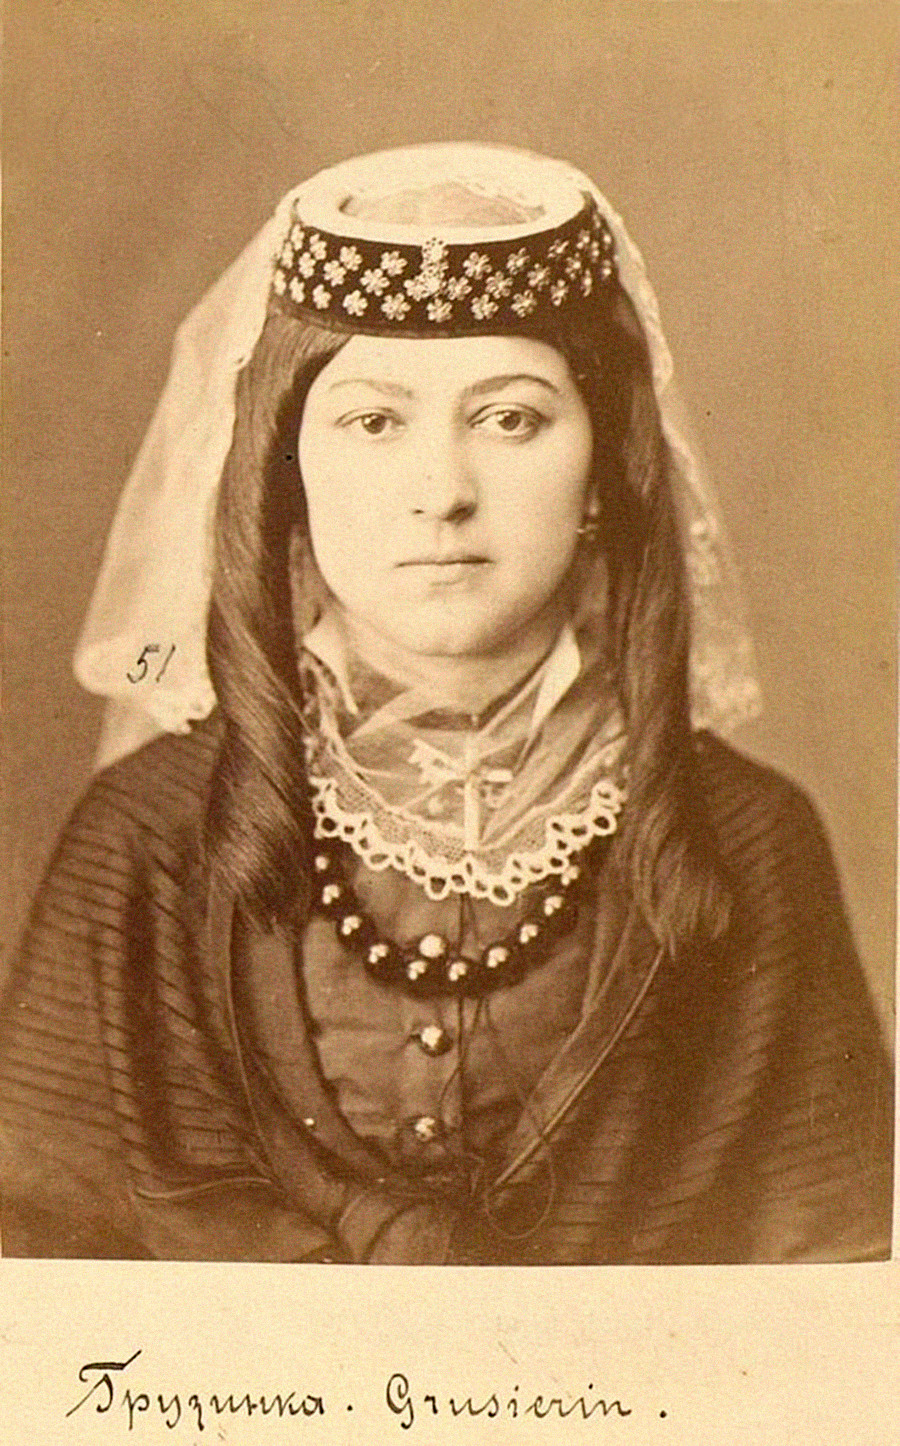 Géorgienne, gouvernorat de Tiflis (actuel Tbilissi, en Géorgie), fin du XIXe siècle